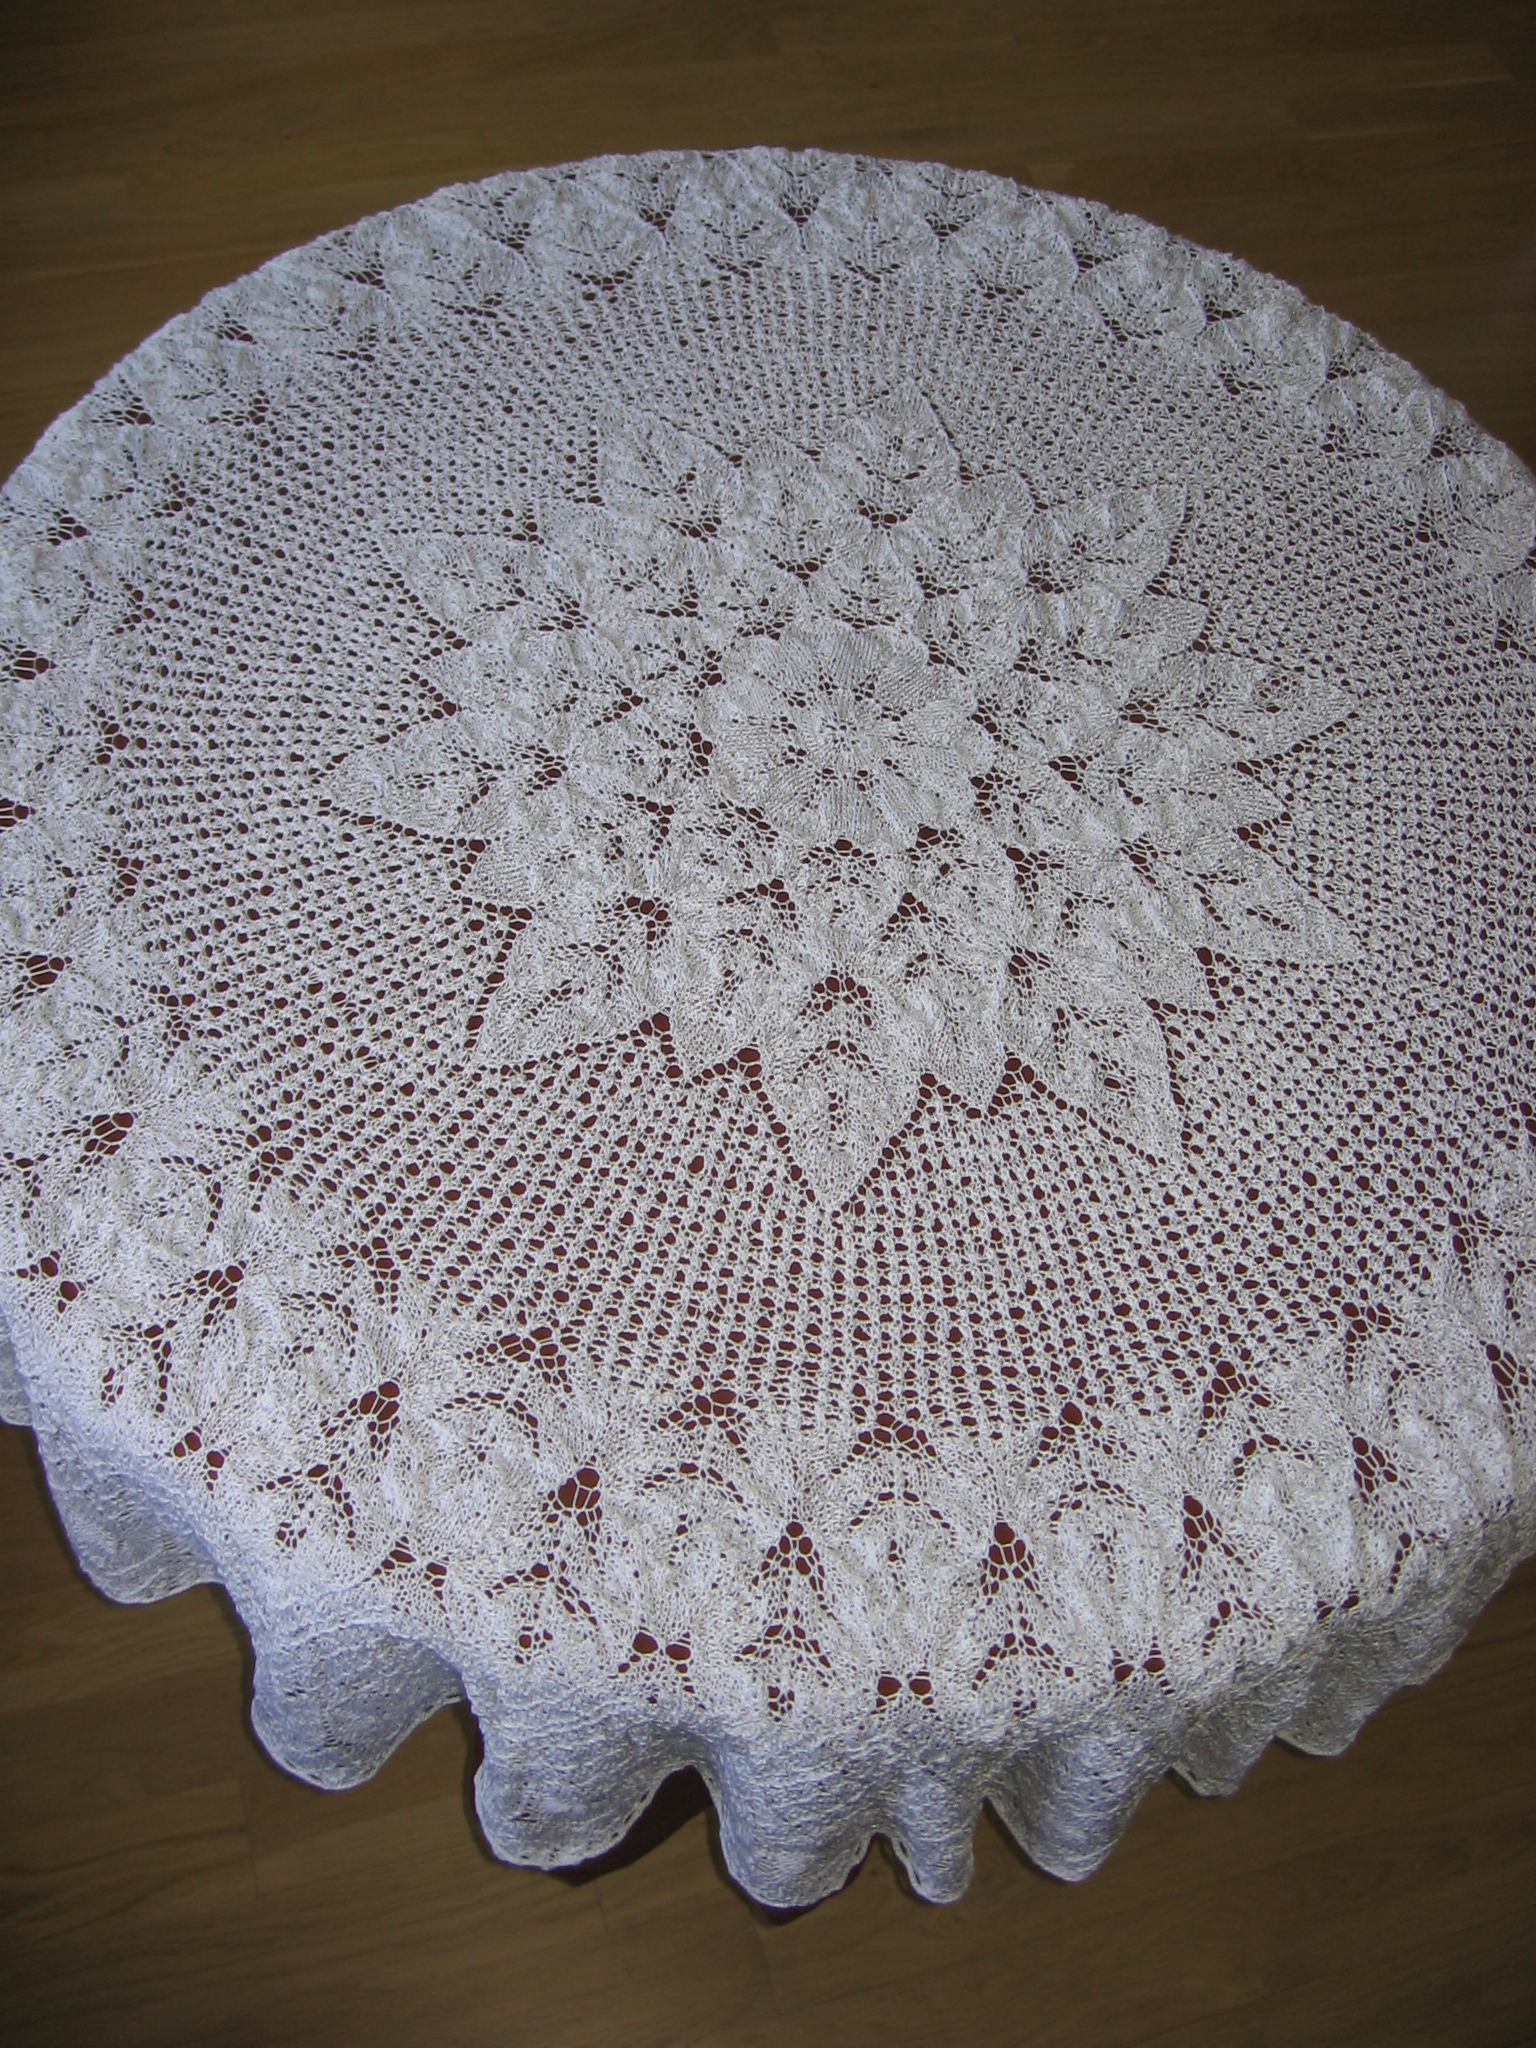 Victorian Knitting Patterns Free Lace Knitting Wikipedia